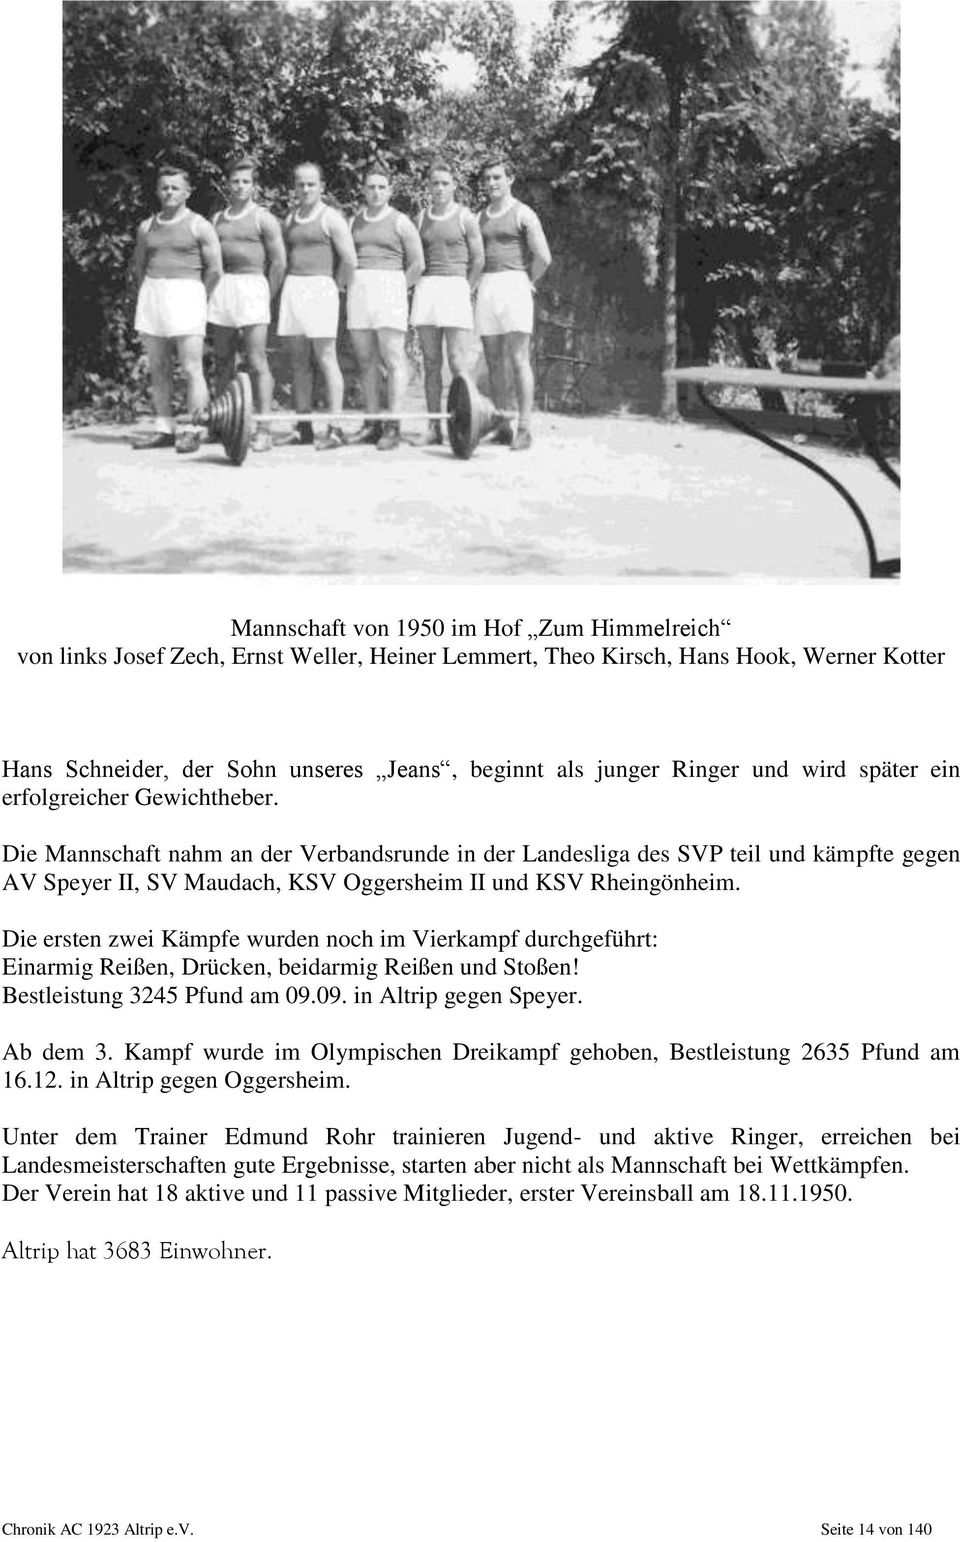 Die Mannschaft nahm an der Verbandsrunde in der Landesliga des SVP teil und kämpfte gegen AV Speyer II, SV Maudach, KSV Oggersheim II und KSV Rheingönheim.